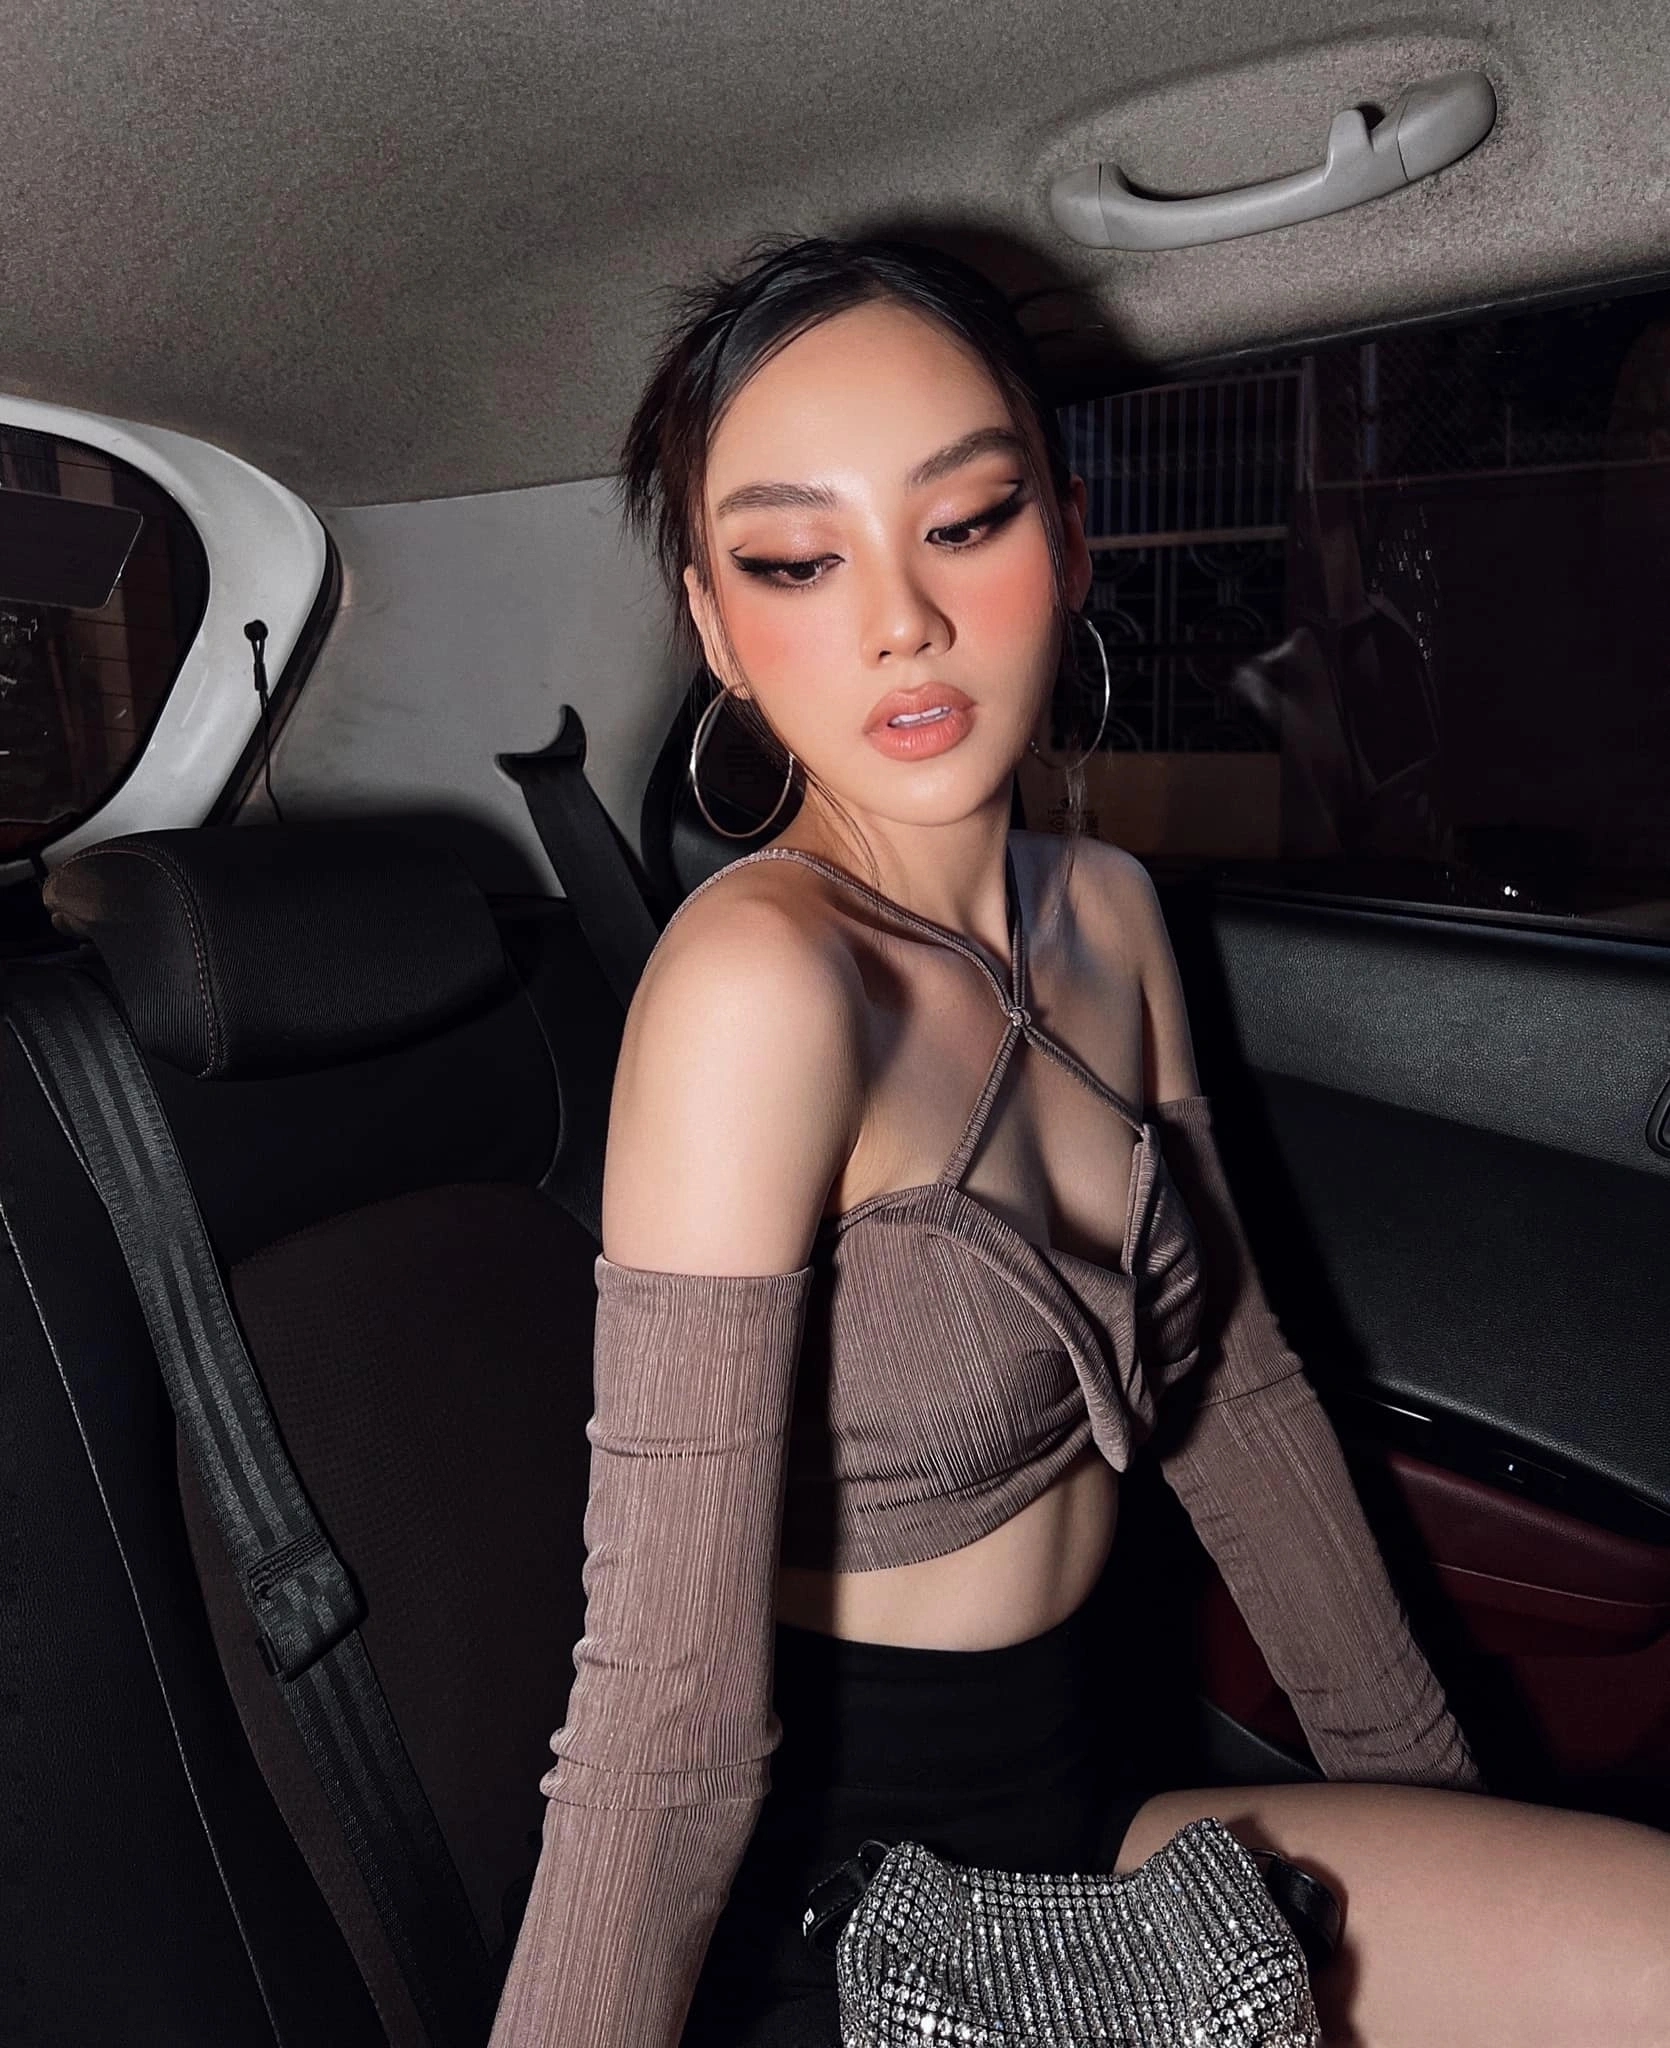 Thay đổi cách trang điểm, tân Hoa hậu Thế giới Việt Nam như thành chị em với Hoa hậu Hoàn vũ 2018 - Ảnh 9.